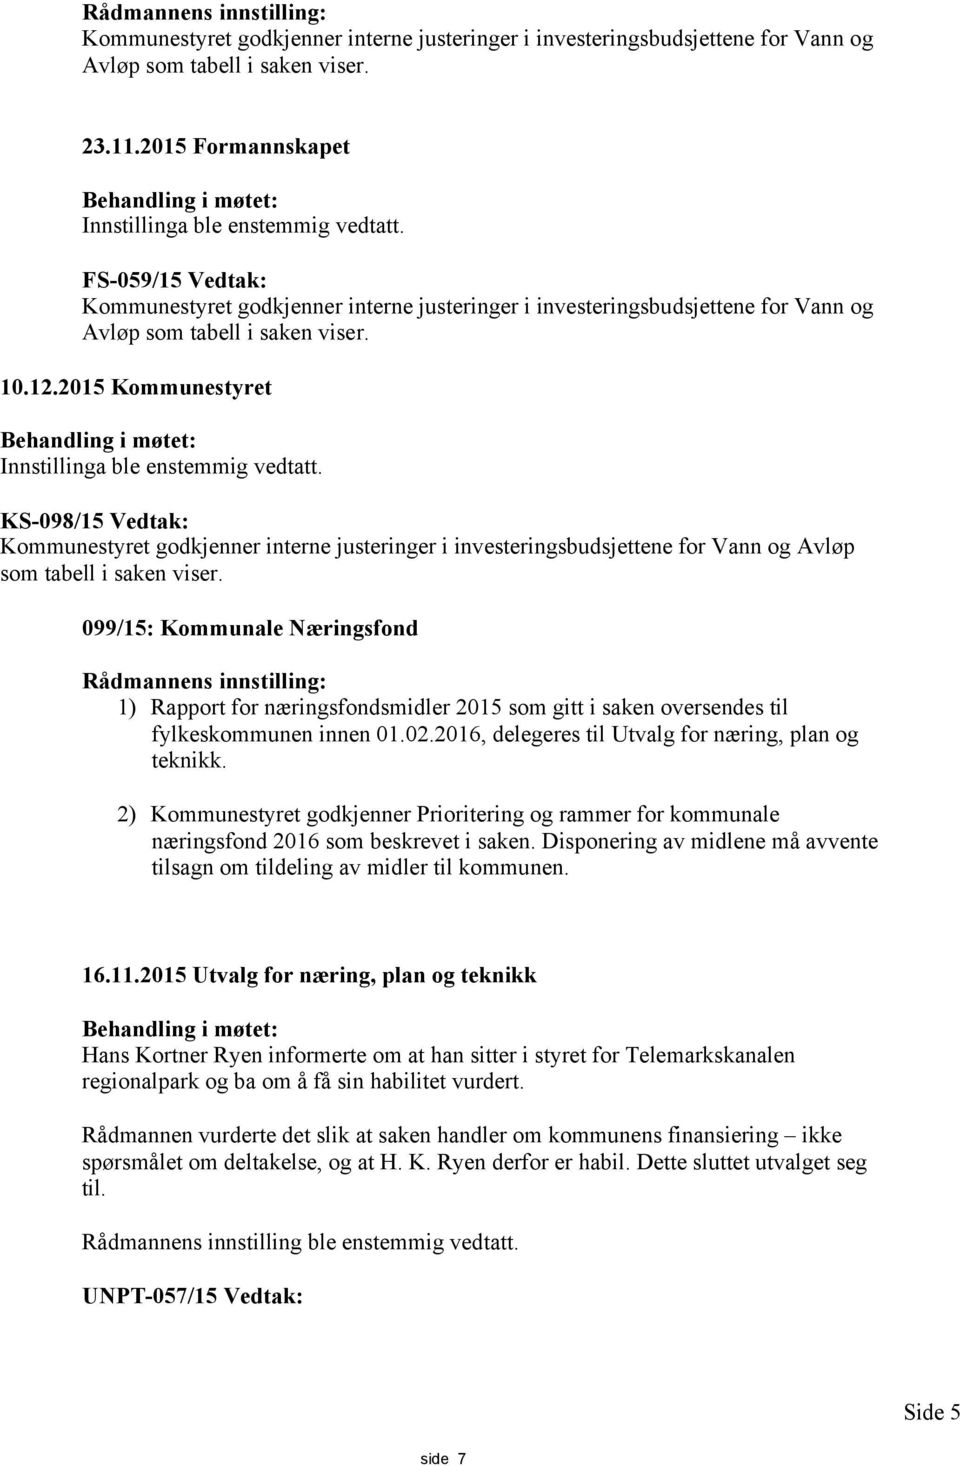 FS-059/15 Vedtak: Kommunestyret godkjenner interne justeringer i investeringsbudsjettene for Vann og Avløp som tabell i saken viser. 10.12.